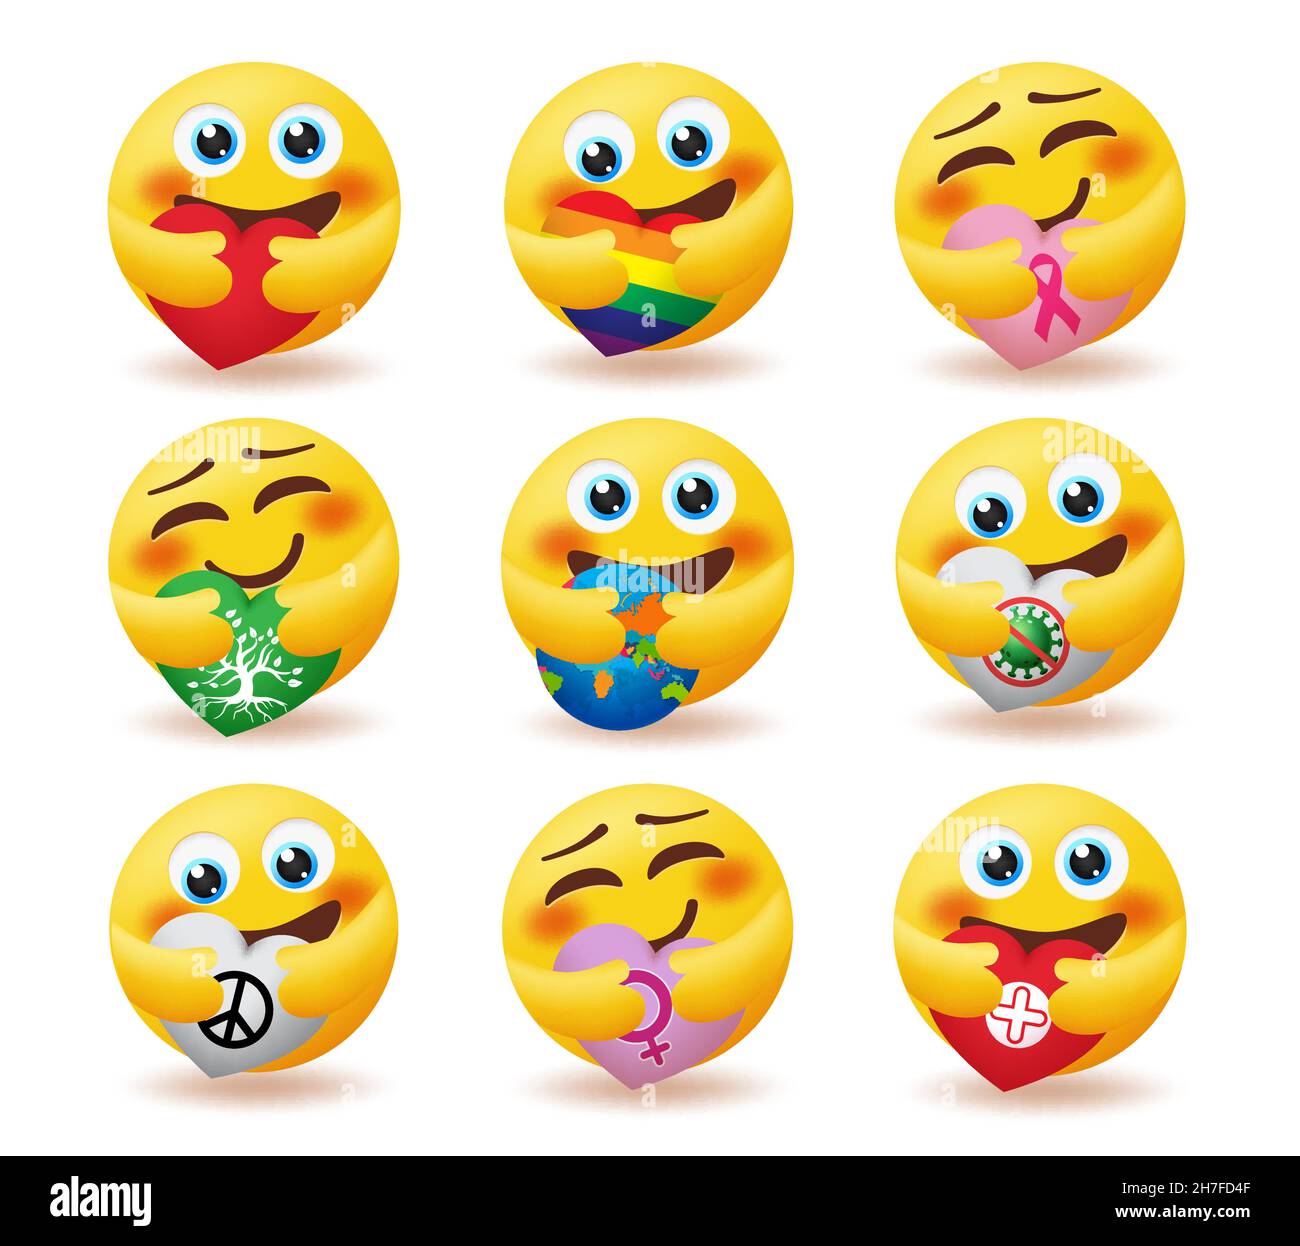 Soins emoji Banque d'images vectorielles - Alamy